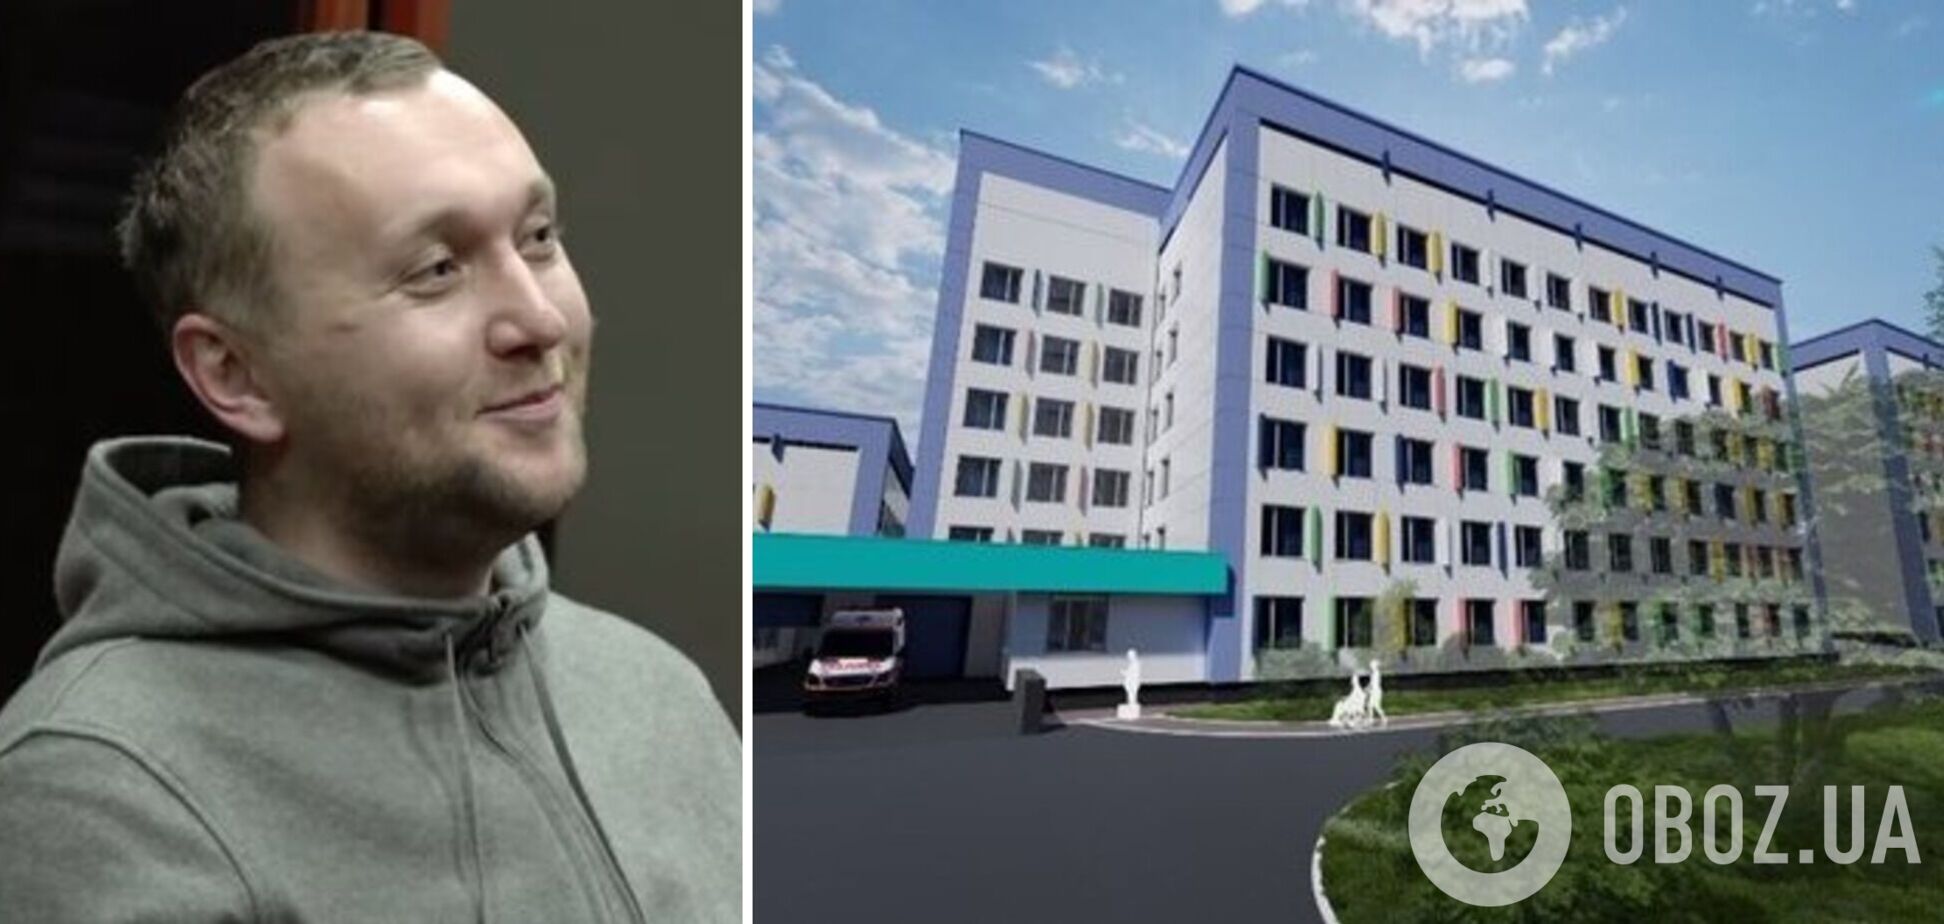 Житомирська ОДА замовила реконструкцію дитячої лікарні за 361 млн грн із завищеними цінами на будматеріали – ЗМІ